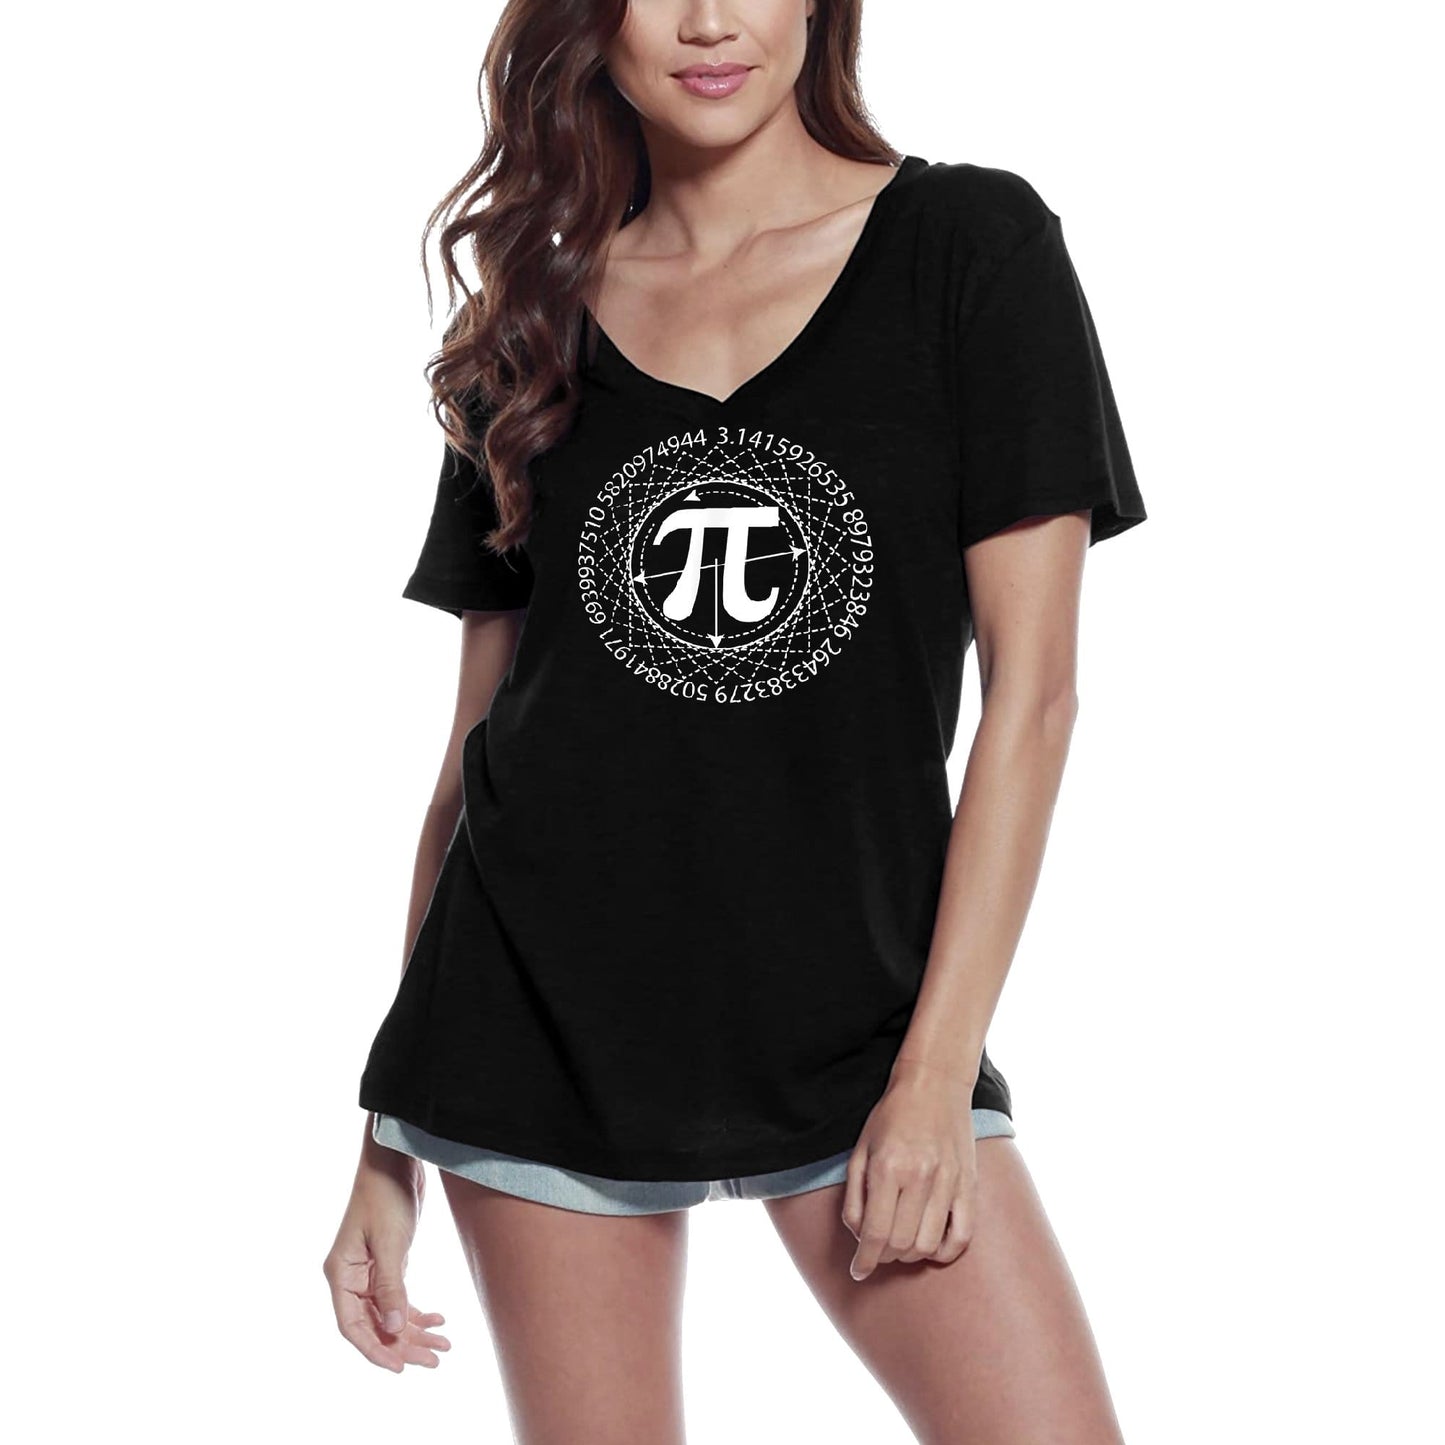 ULTRABASIC Women's V-Neck T-Shirt Pi Sign Design - Funny Math Lover Tee